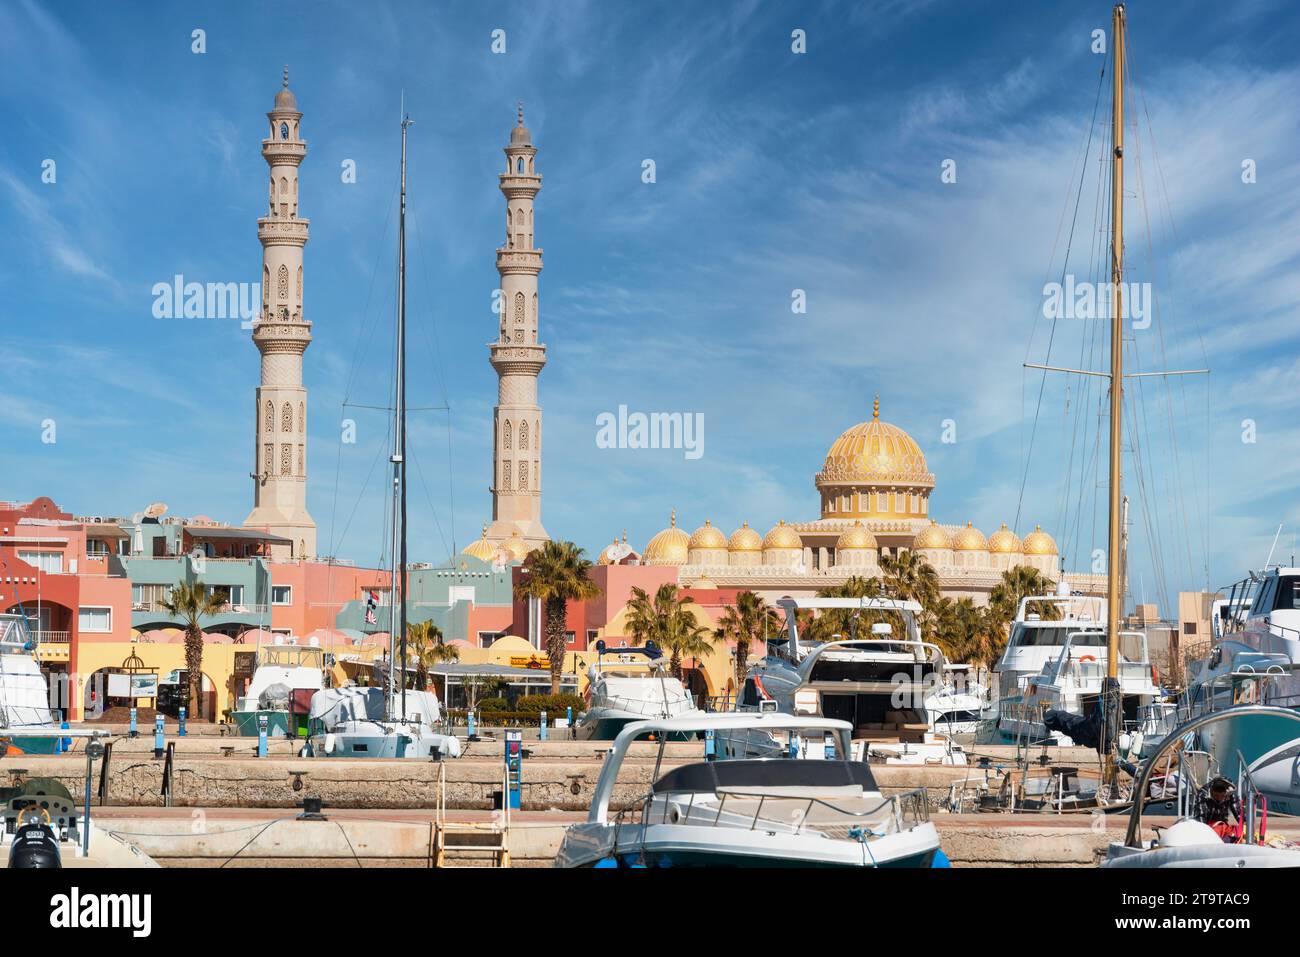 Hurghada, Egypt, January 2022, view of Al Mina mosque from Marina Stock Photo